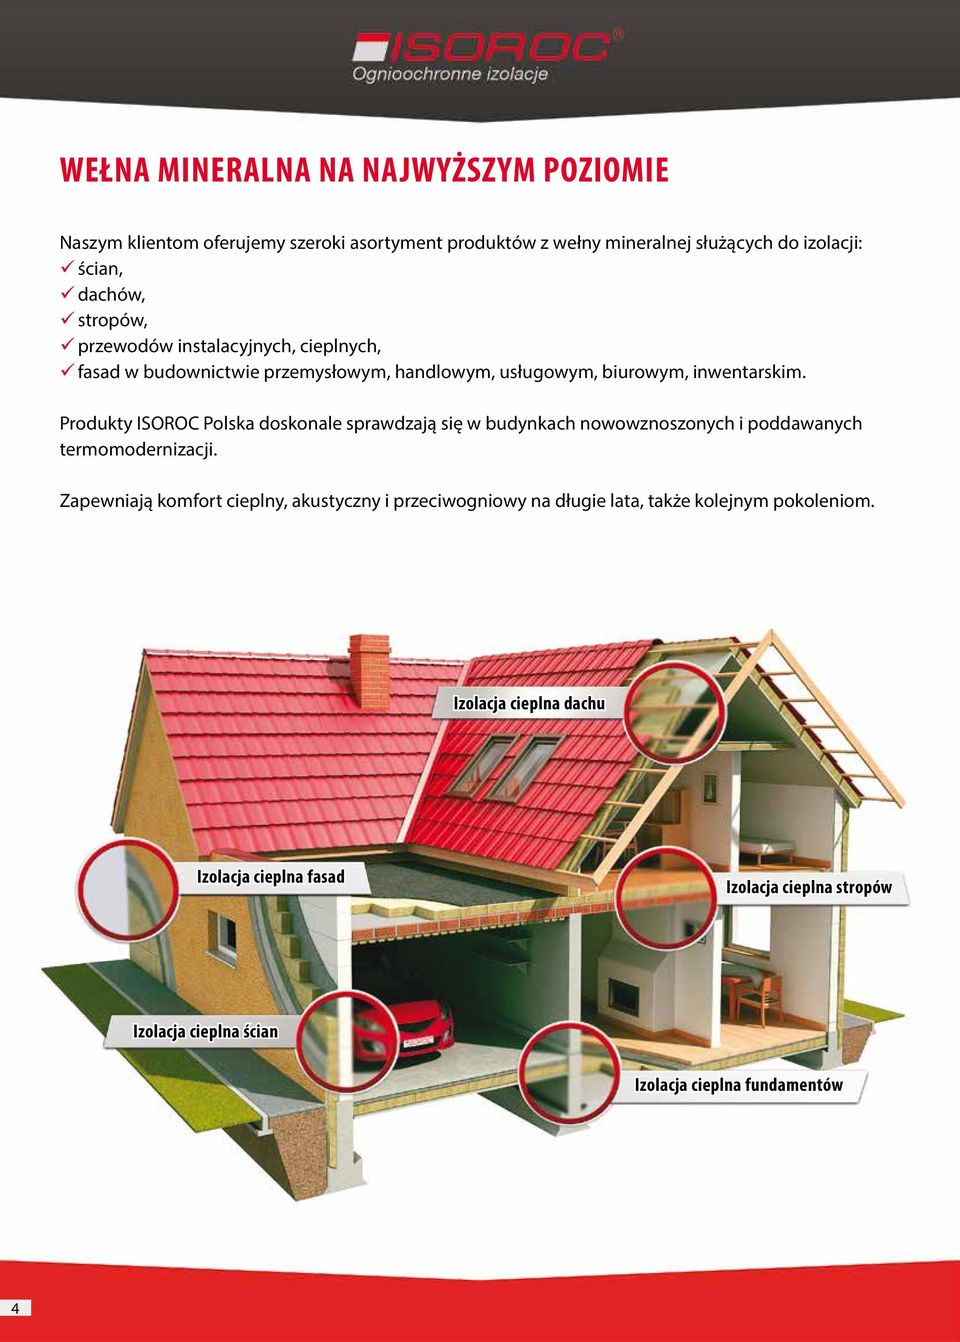 Produkty ISOROC Polska doskonale sprawdzają się w budynkach nowowznoszonych i poddawanych termomodernizacji.